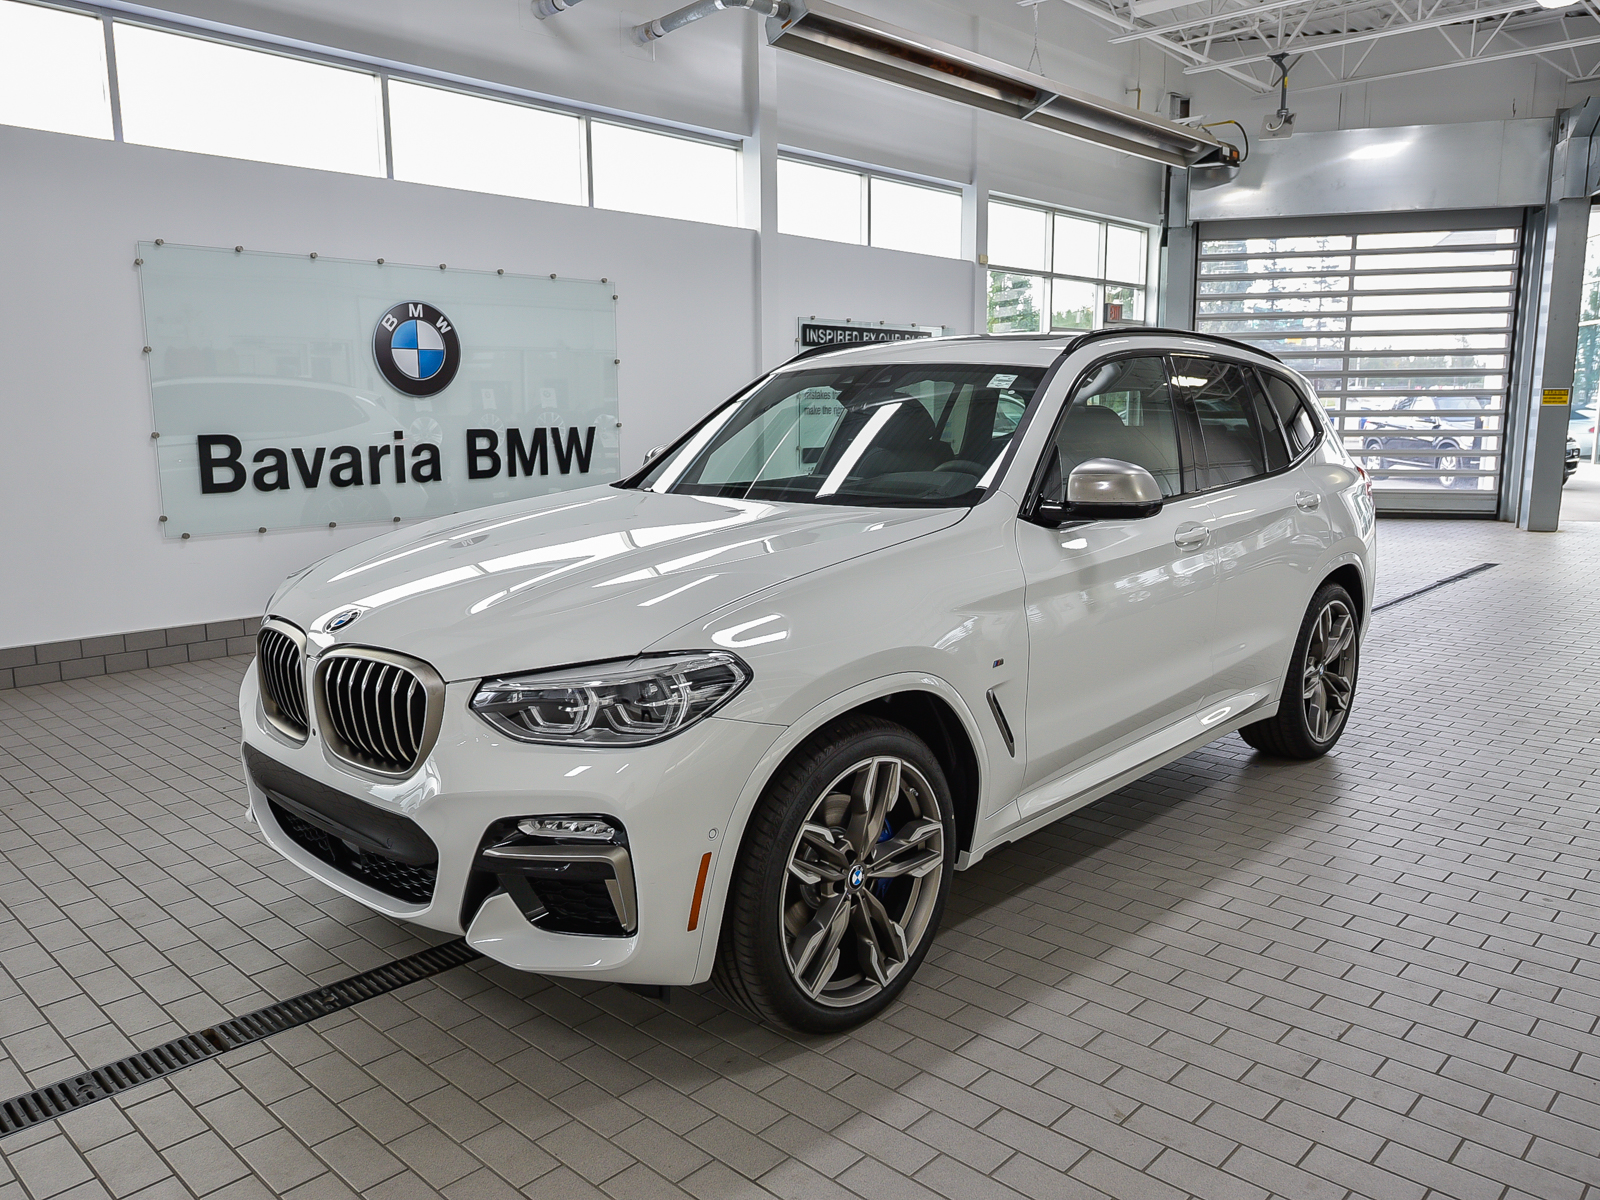 New 2019 BMW X3 M40i Crossover in Edmonton #19X32679 | Bavaria BMW